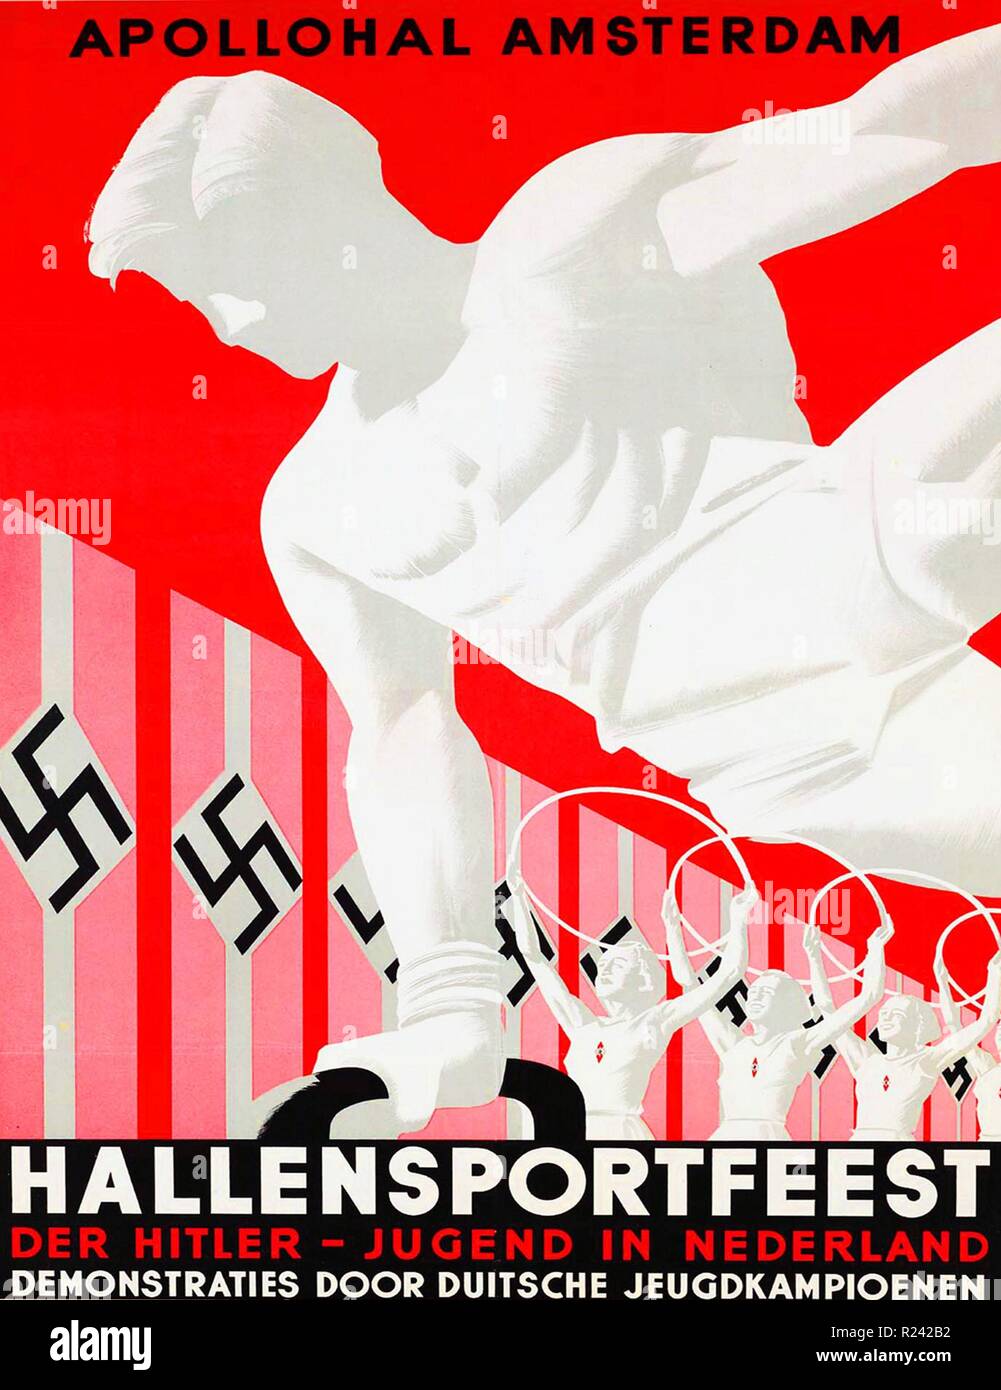 Affiche pour un festival de sports de jeunesse nazie à Amsterdam pendant l'occupation allemande des Pays-Bas vers 1941 Banque D'Images